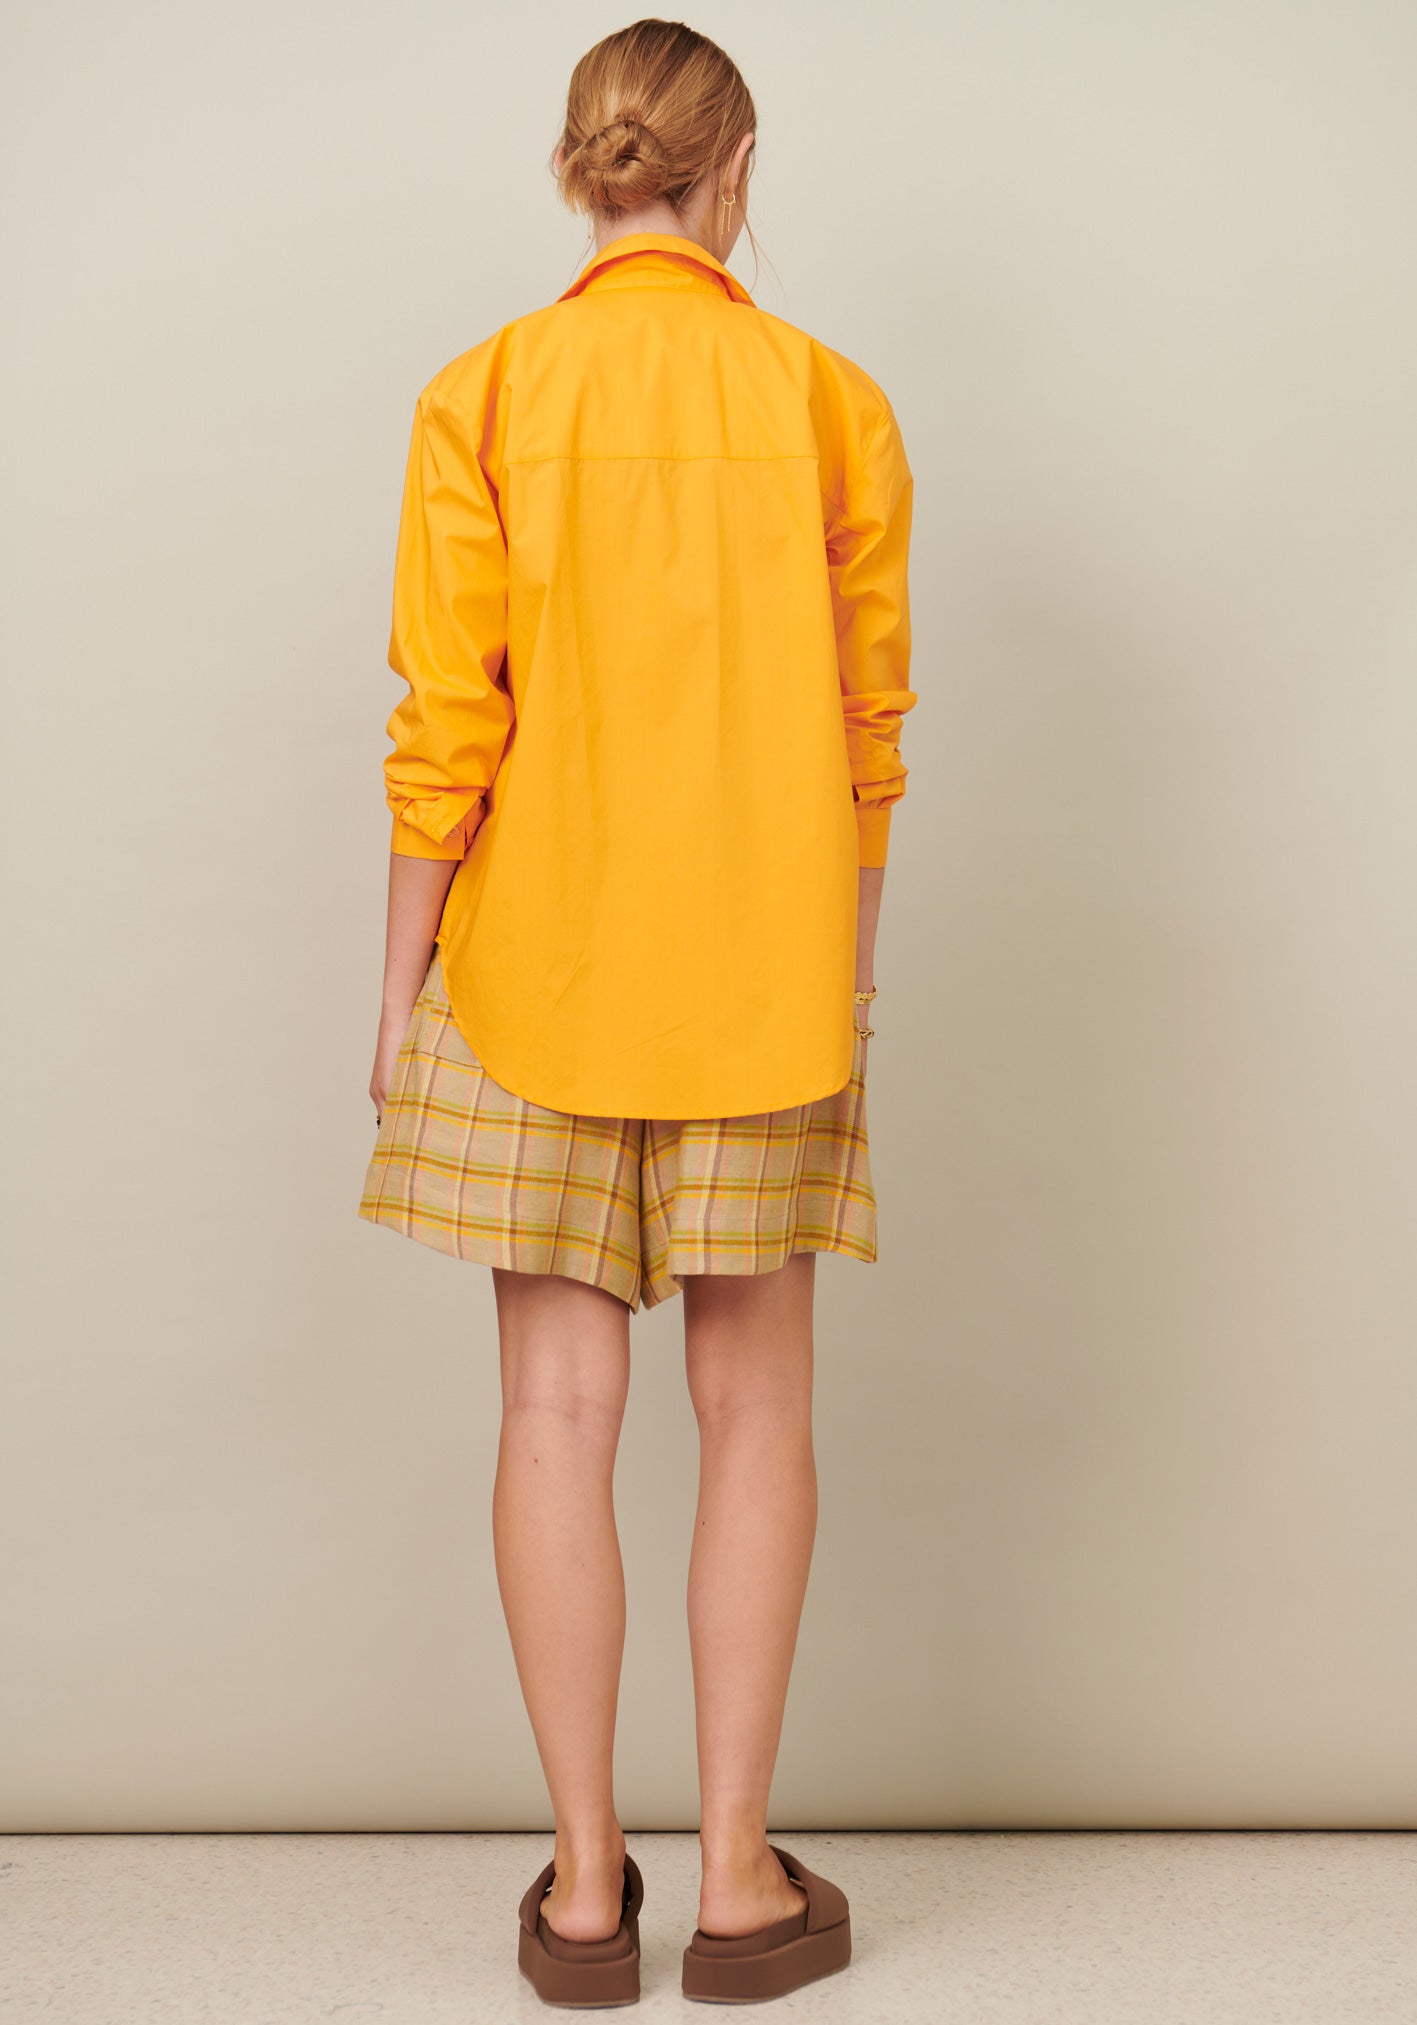 Pol Elisa Shirt - Orange